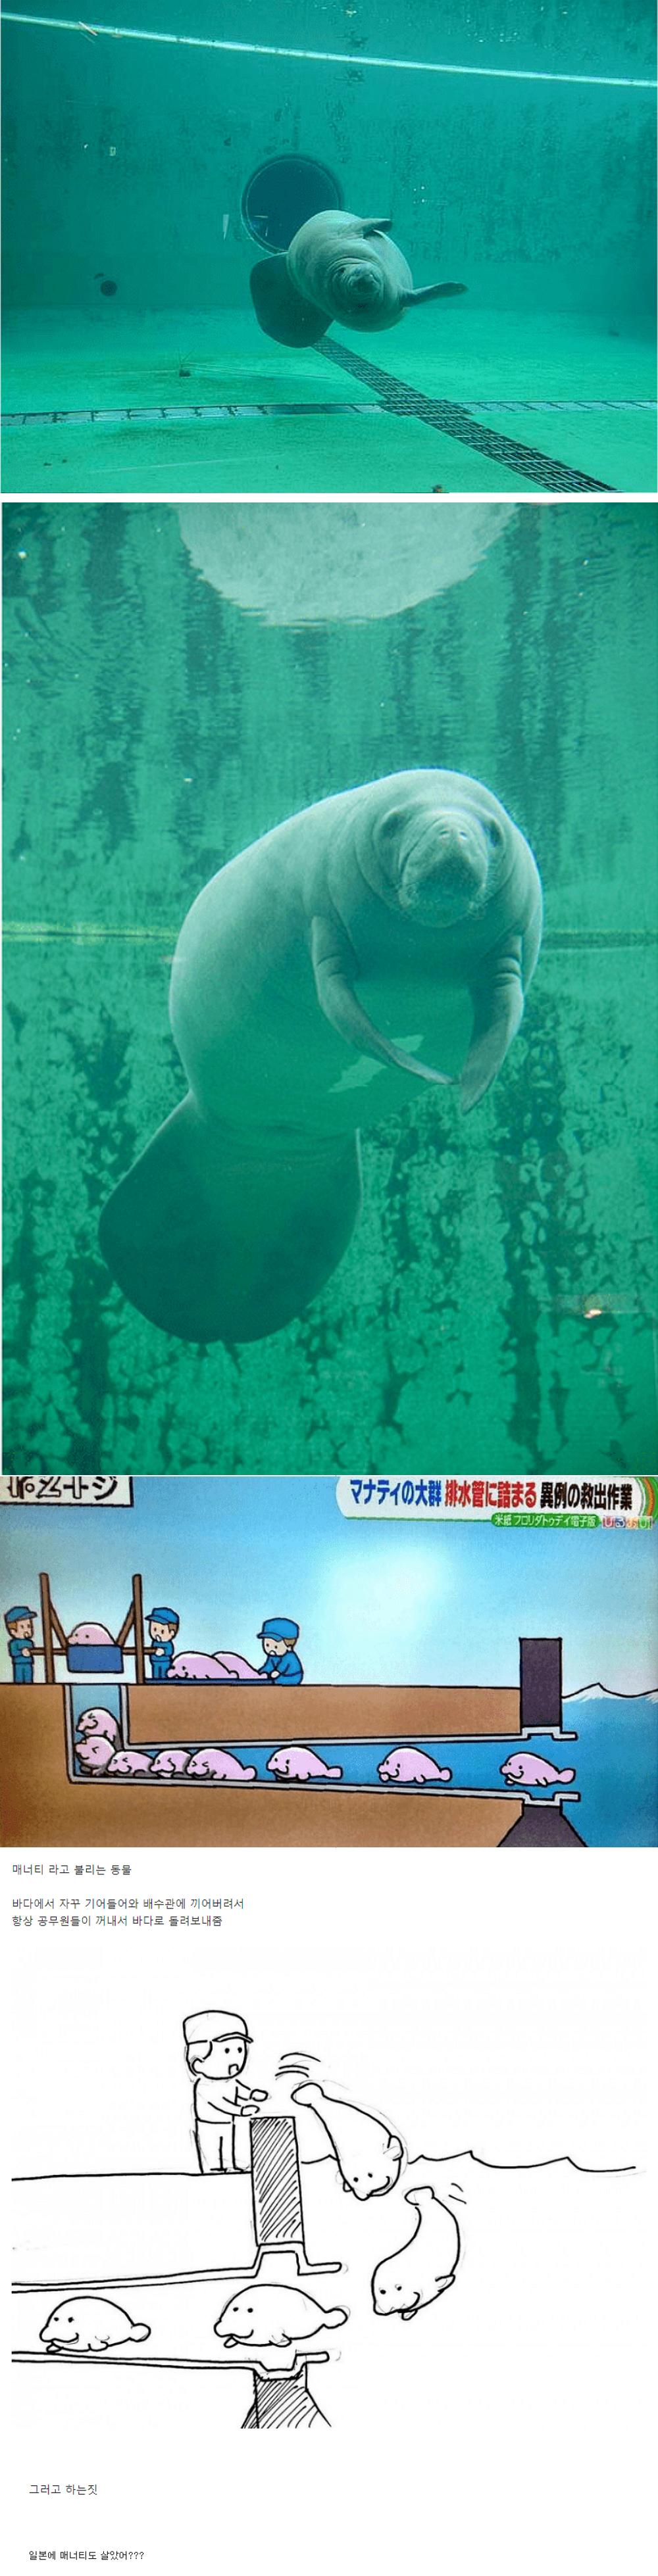 일본 배수관에 자주 출몰하는 놈.png.jpg